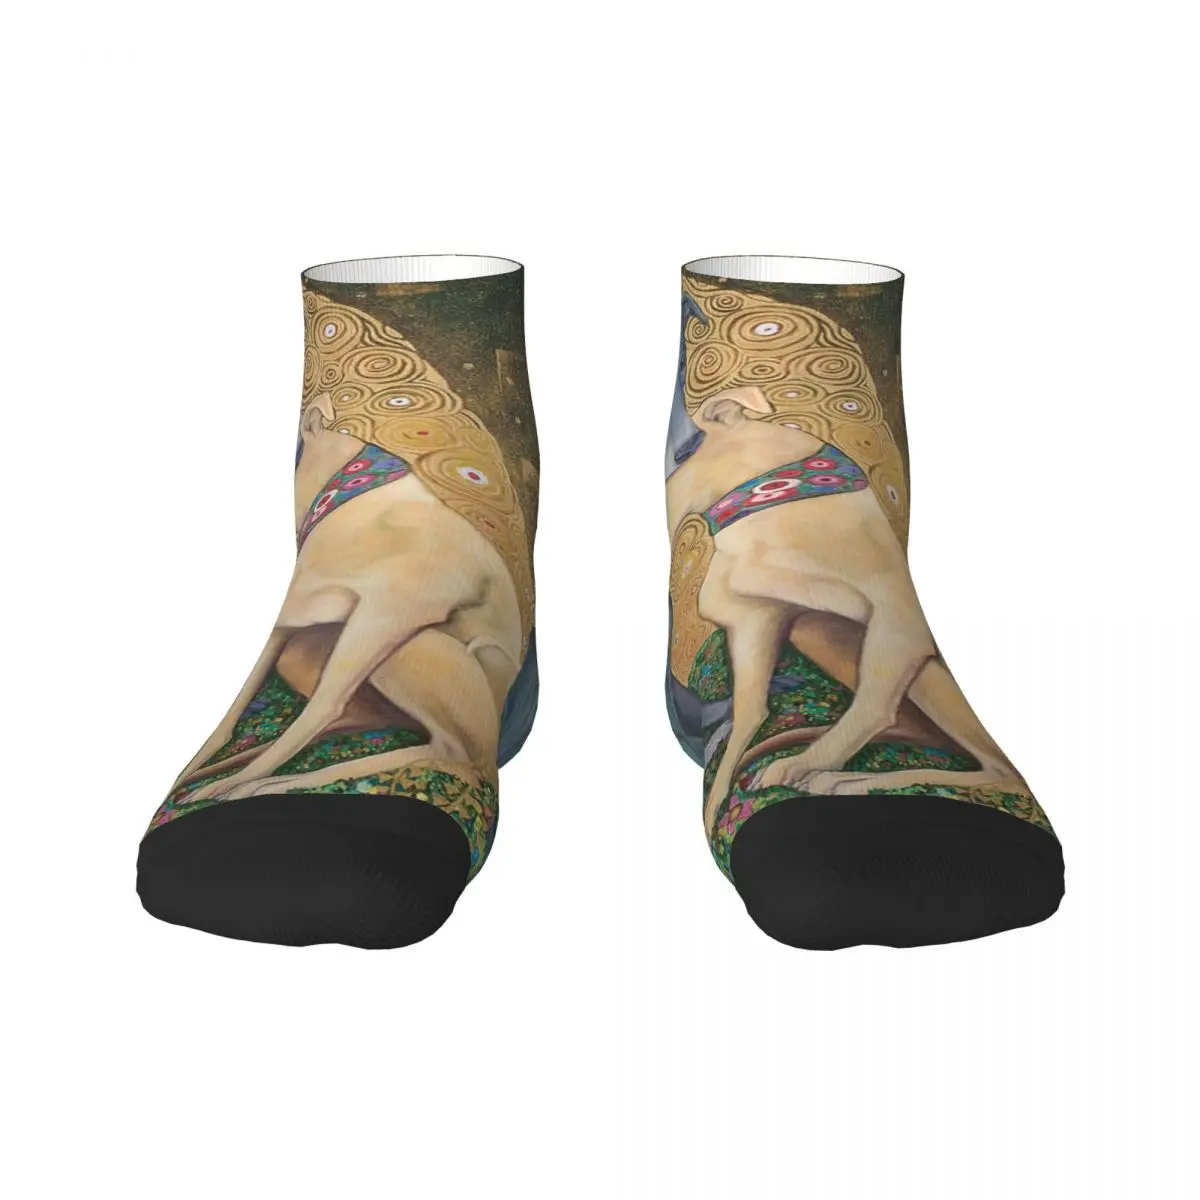 

Мужские и женские носки Gustav Klimt Greyhound с изображением собаки, теплые модные носки, новинка